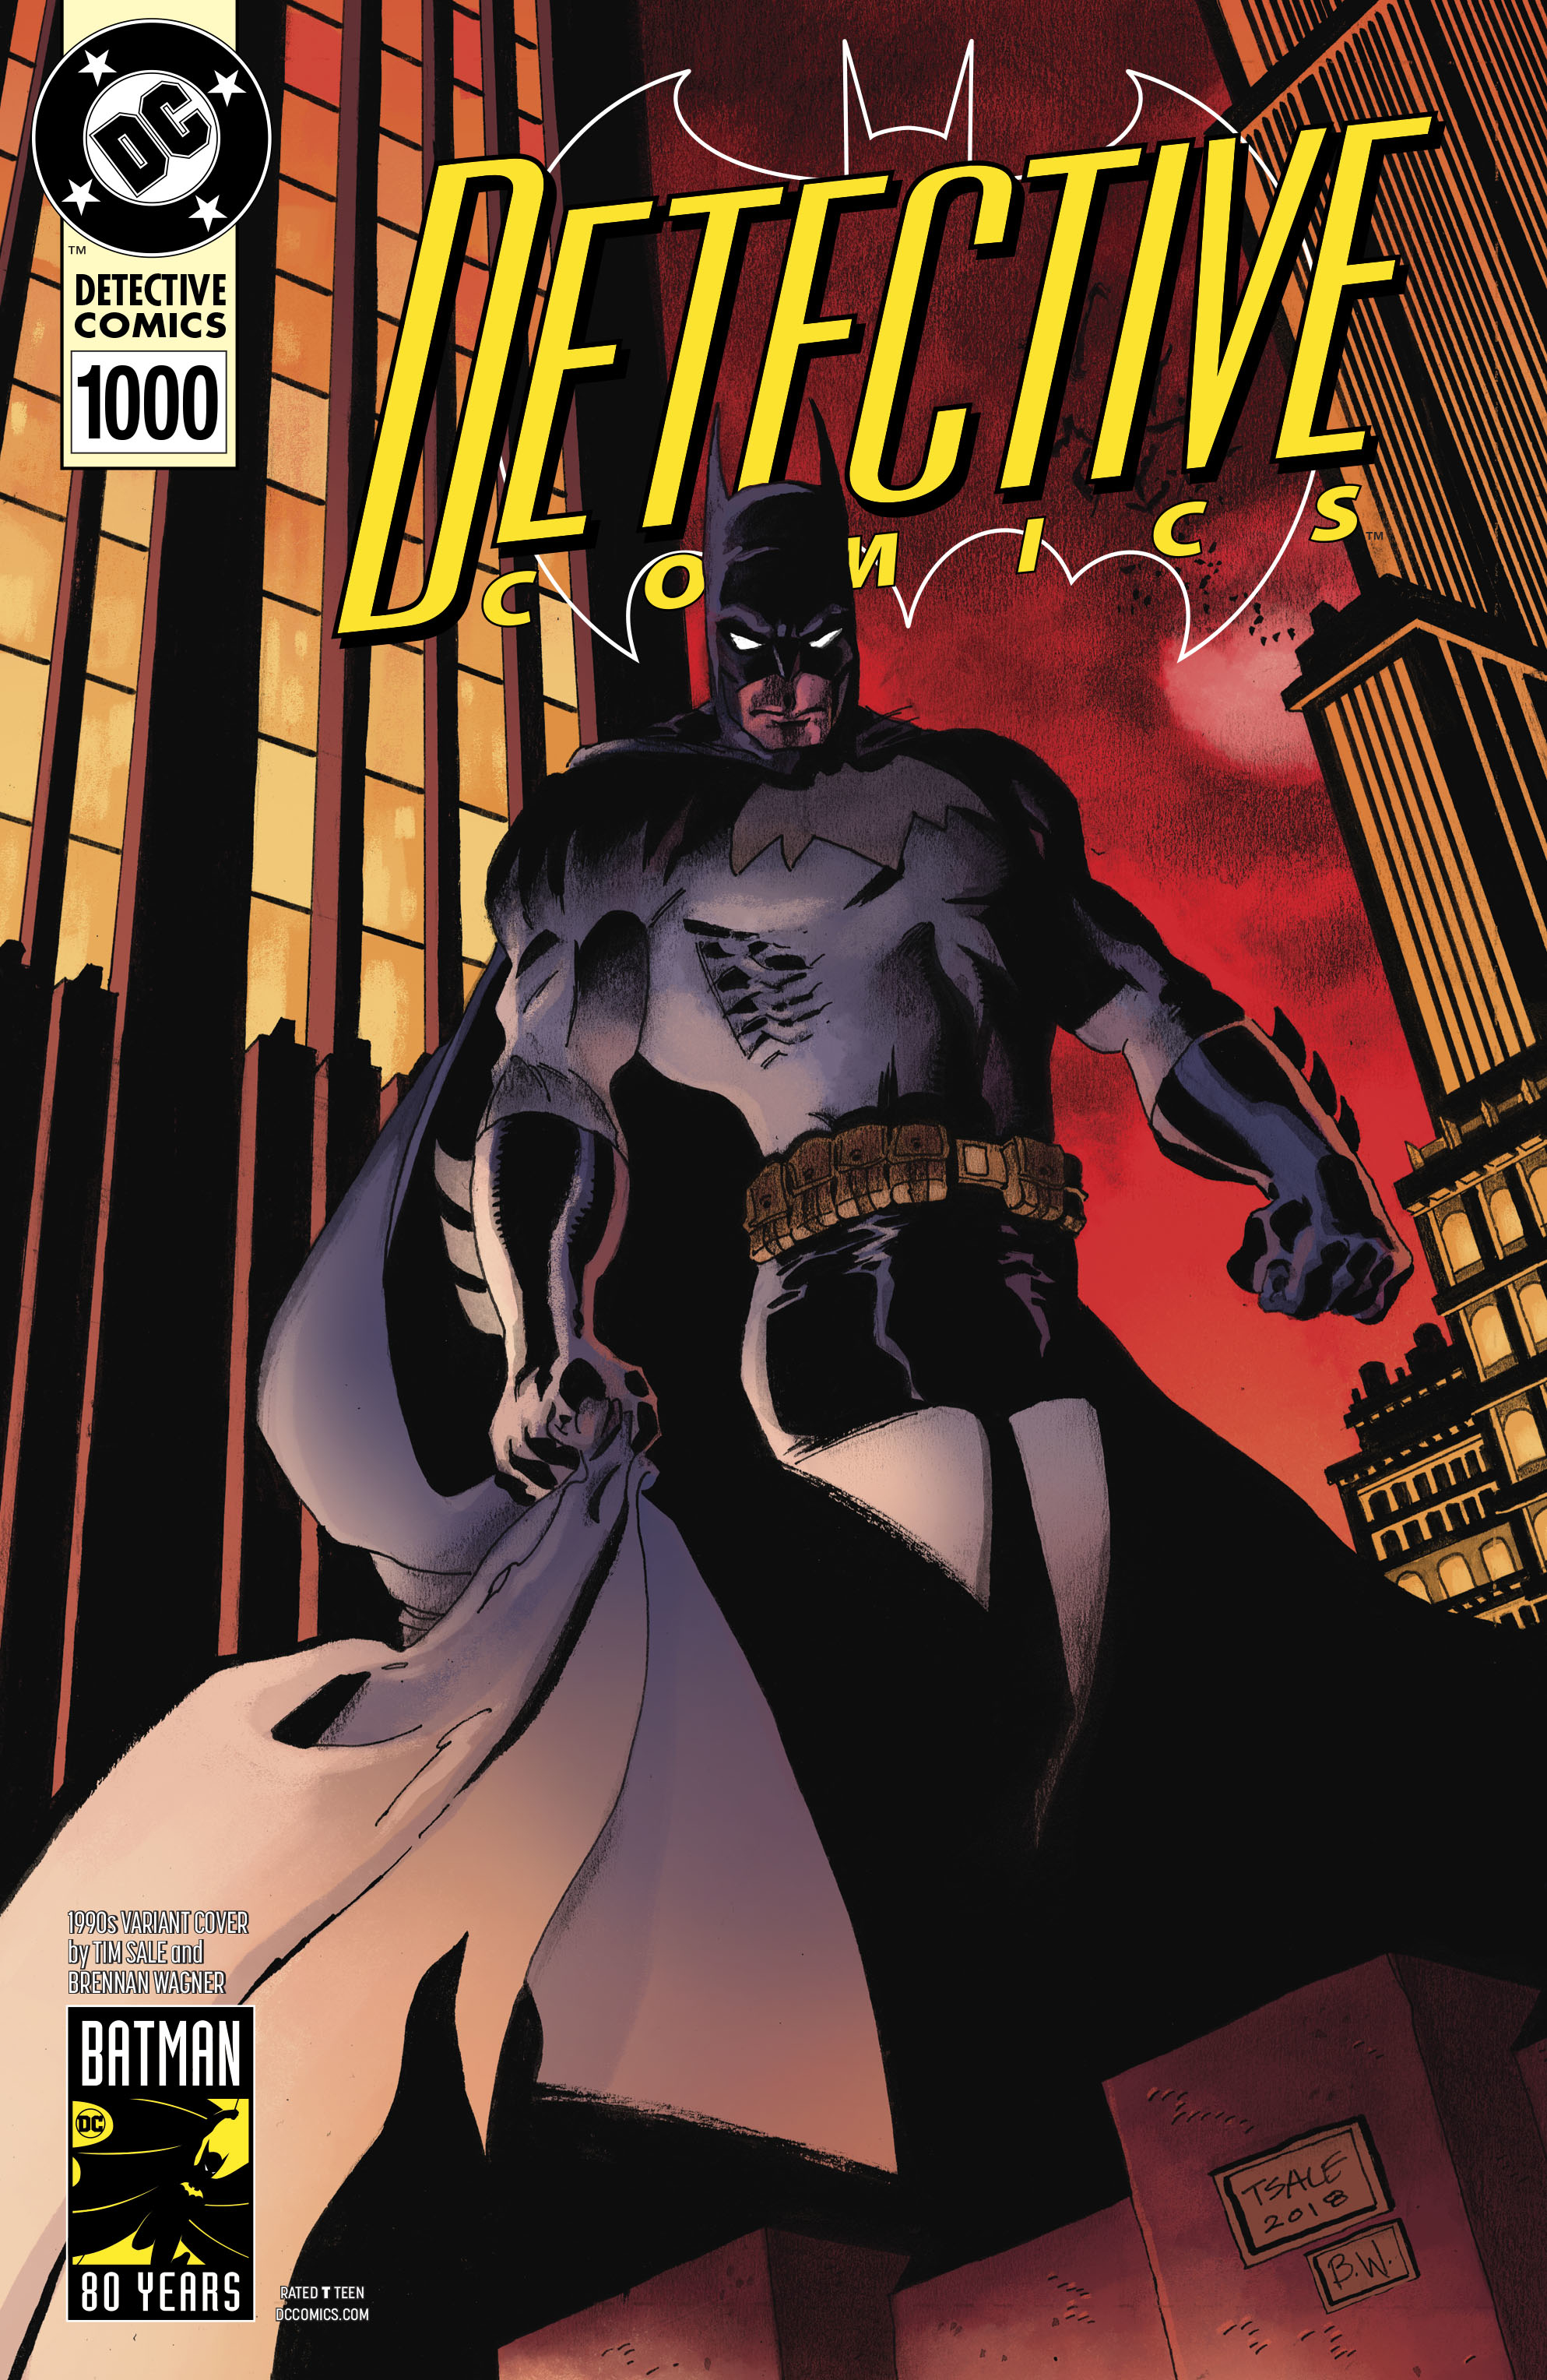 Detective Comics no. 1000 (1990 Variant) (1937 Series)